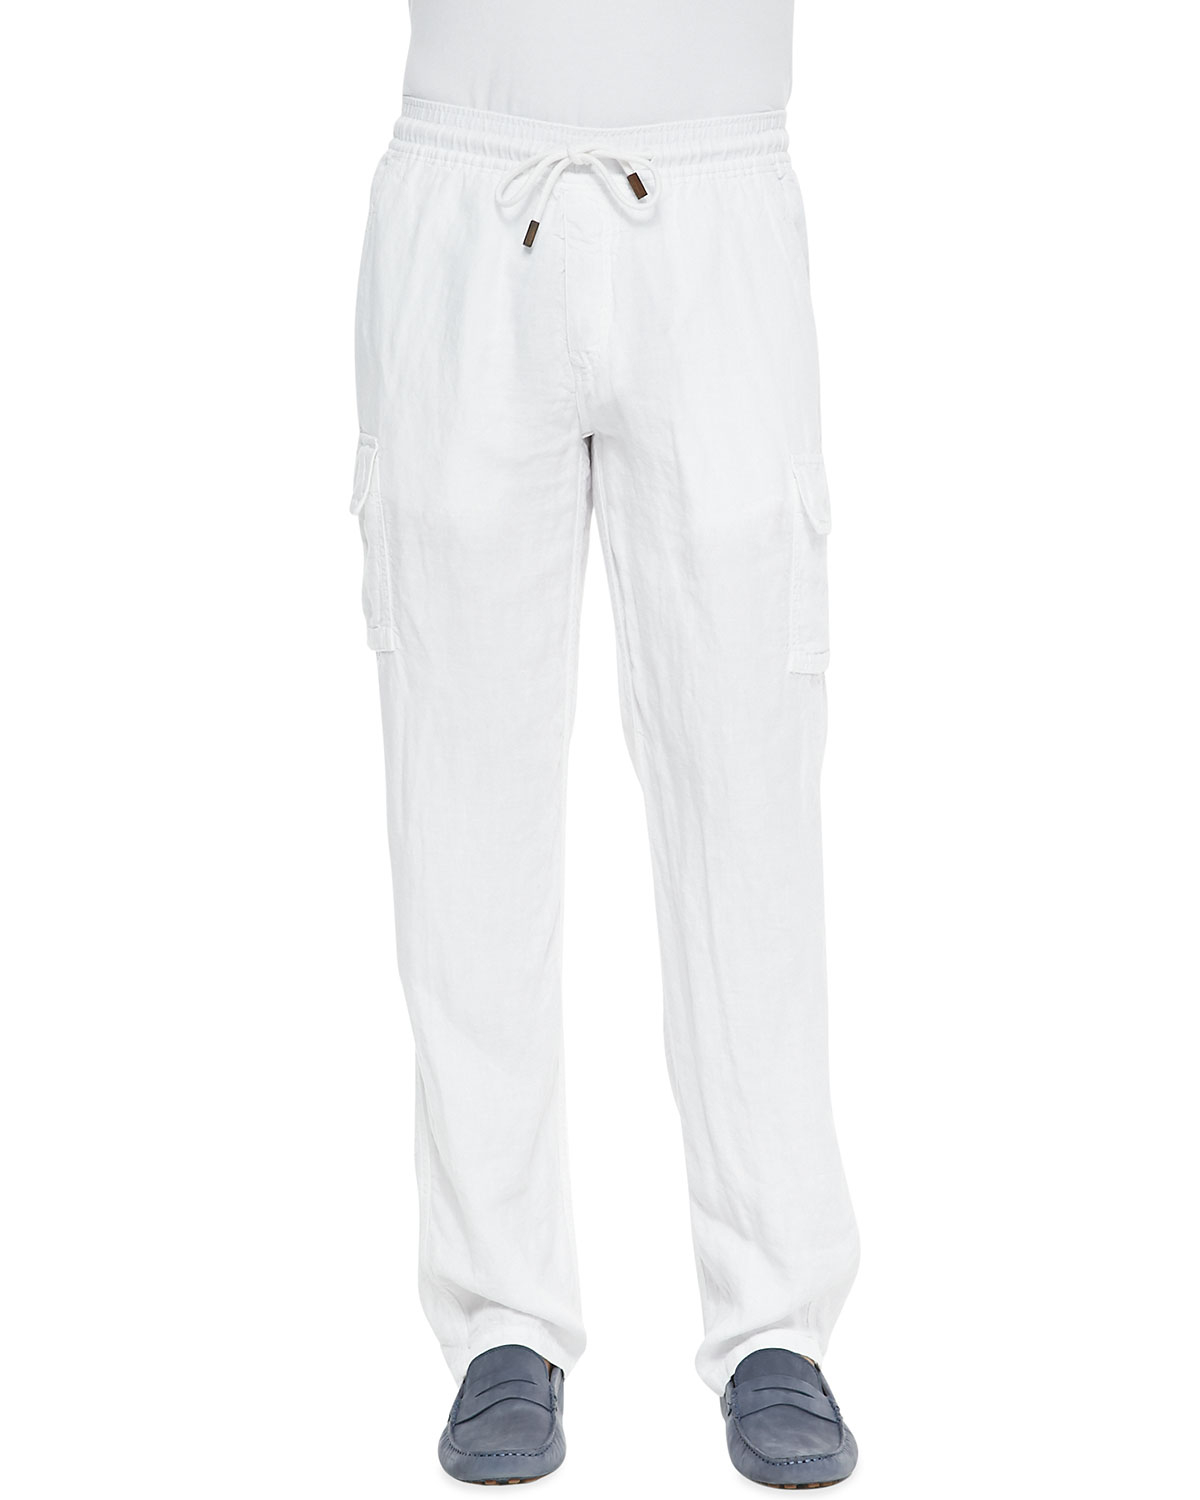 Lyst - Vilebrequin Linen Cargo Pants in White for Men